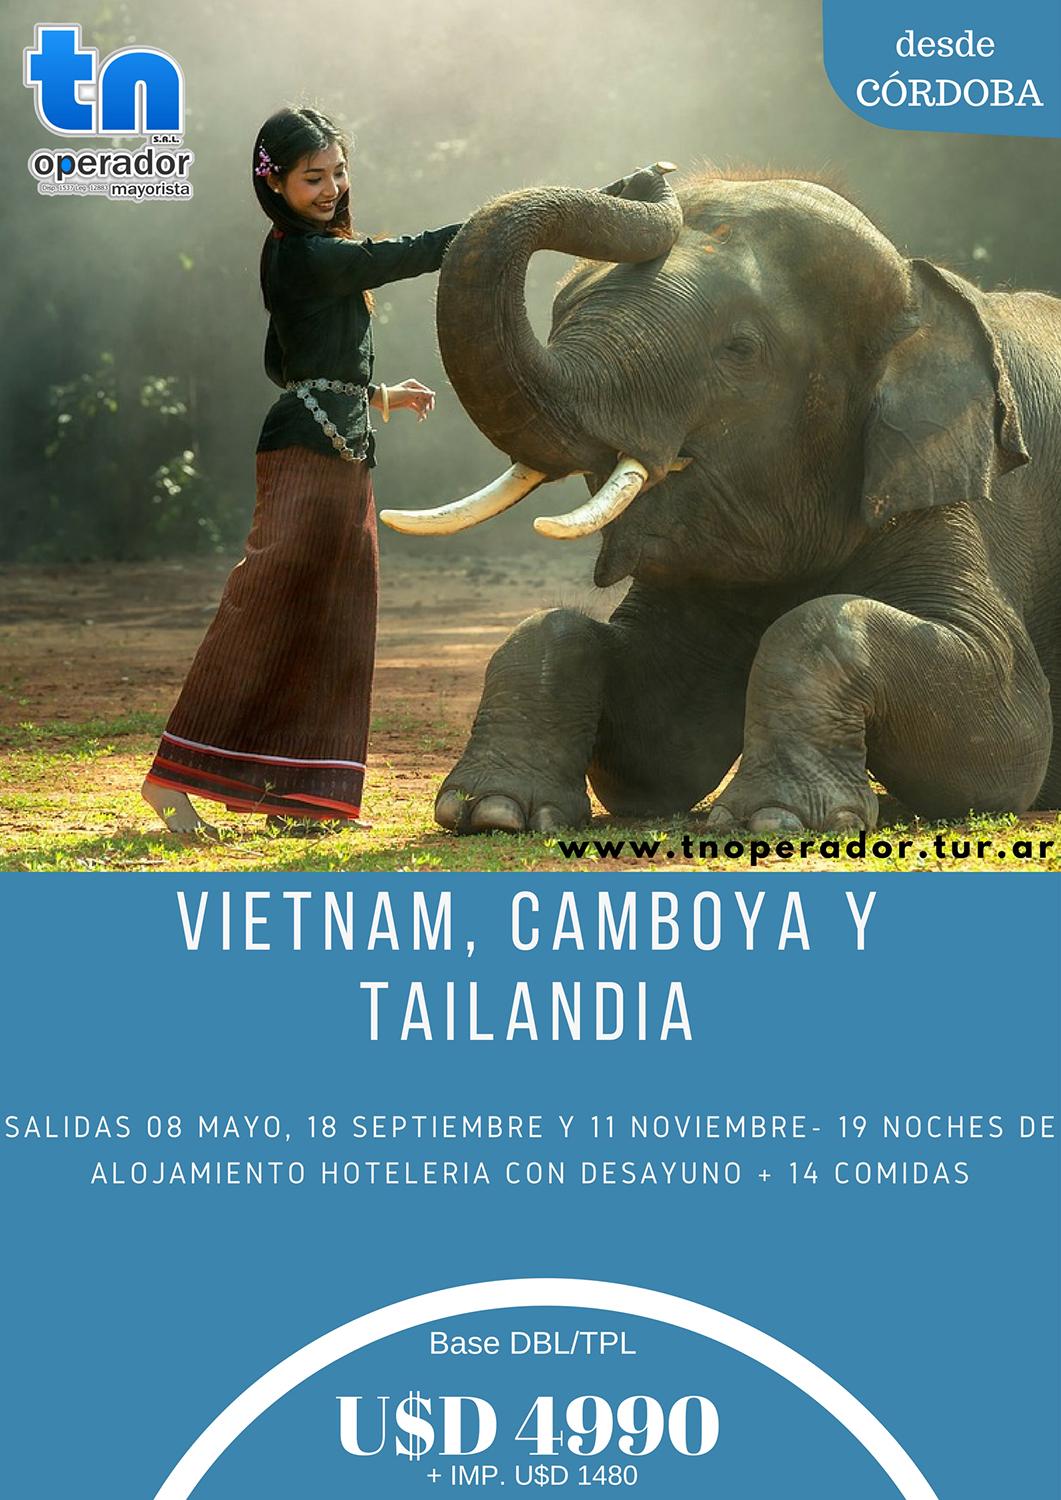 Viaje a Vietnam Camboya y Tailandia desde Córdoba